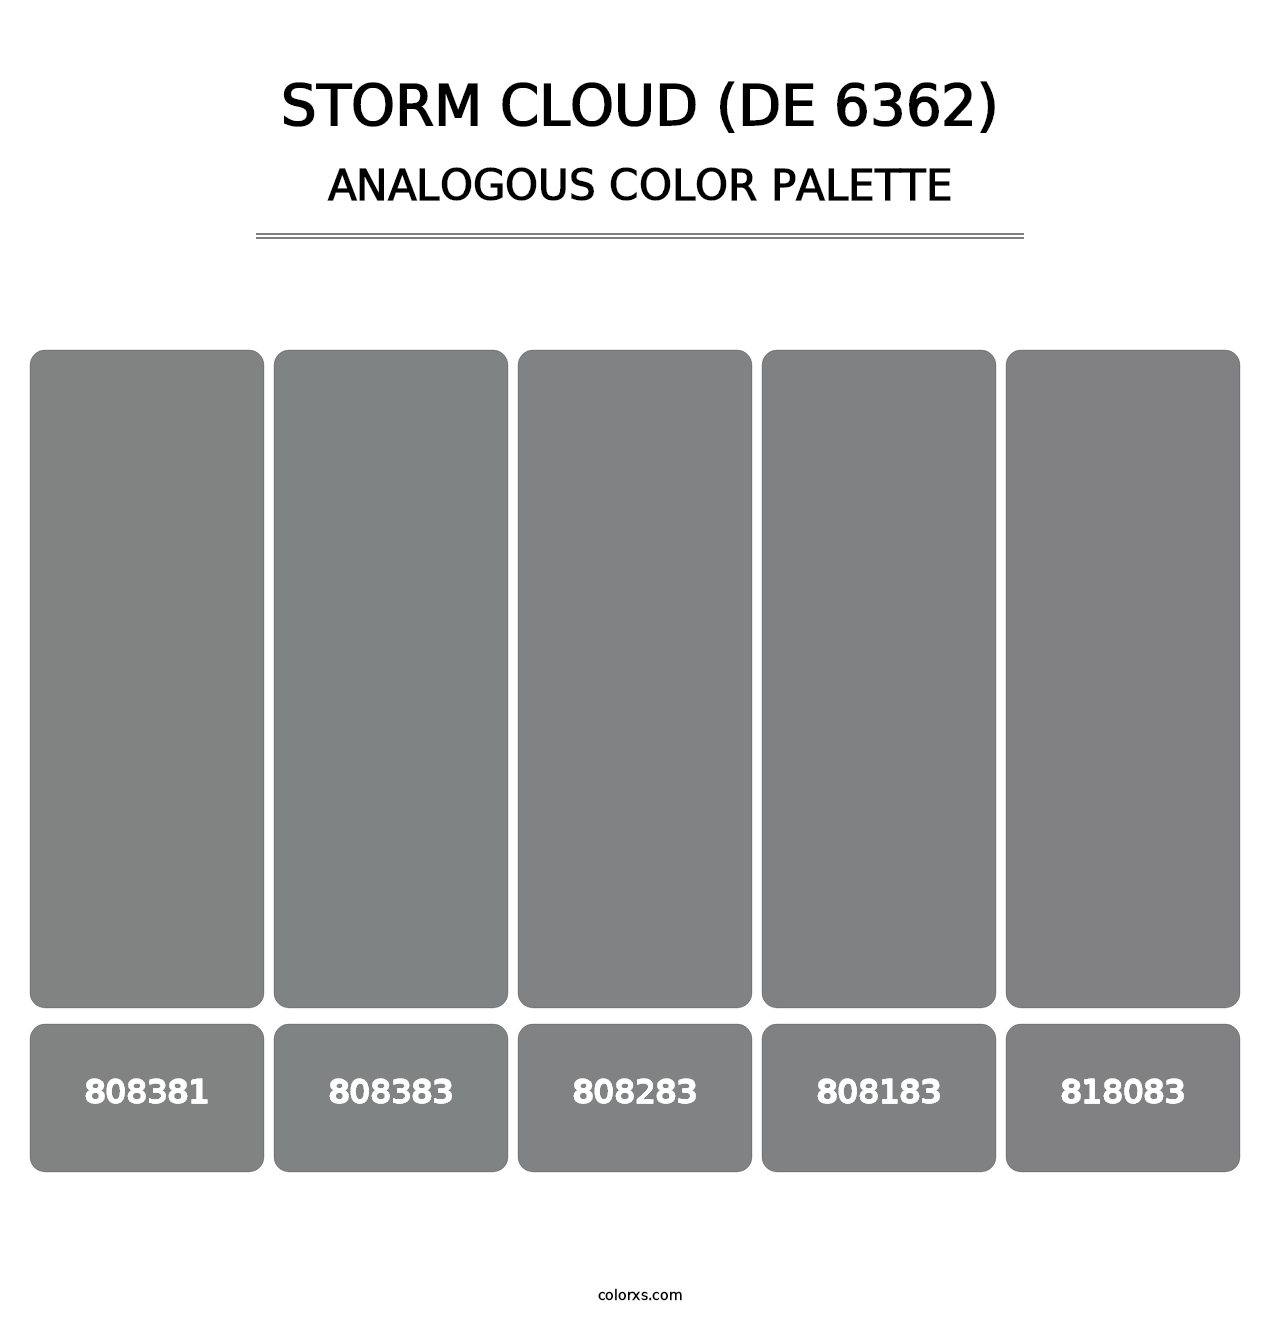 Storm Cloud (DE 6362) - Analogous Color Palette